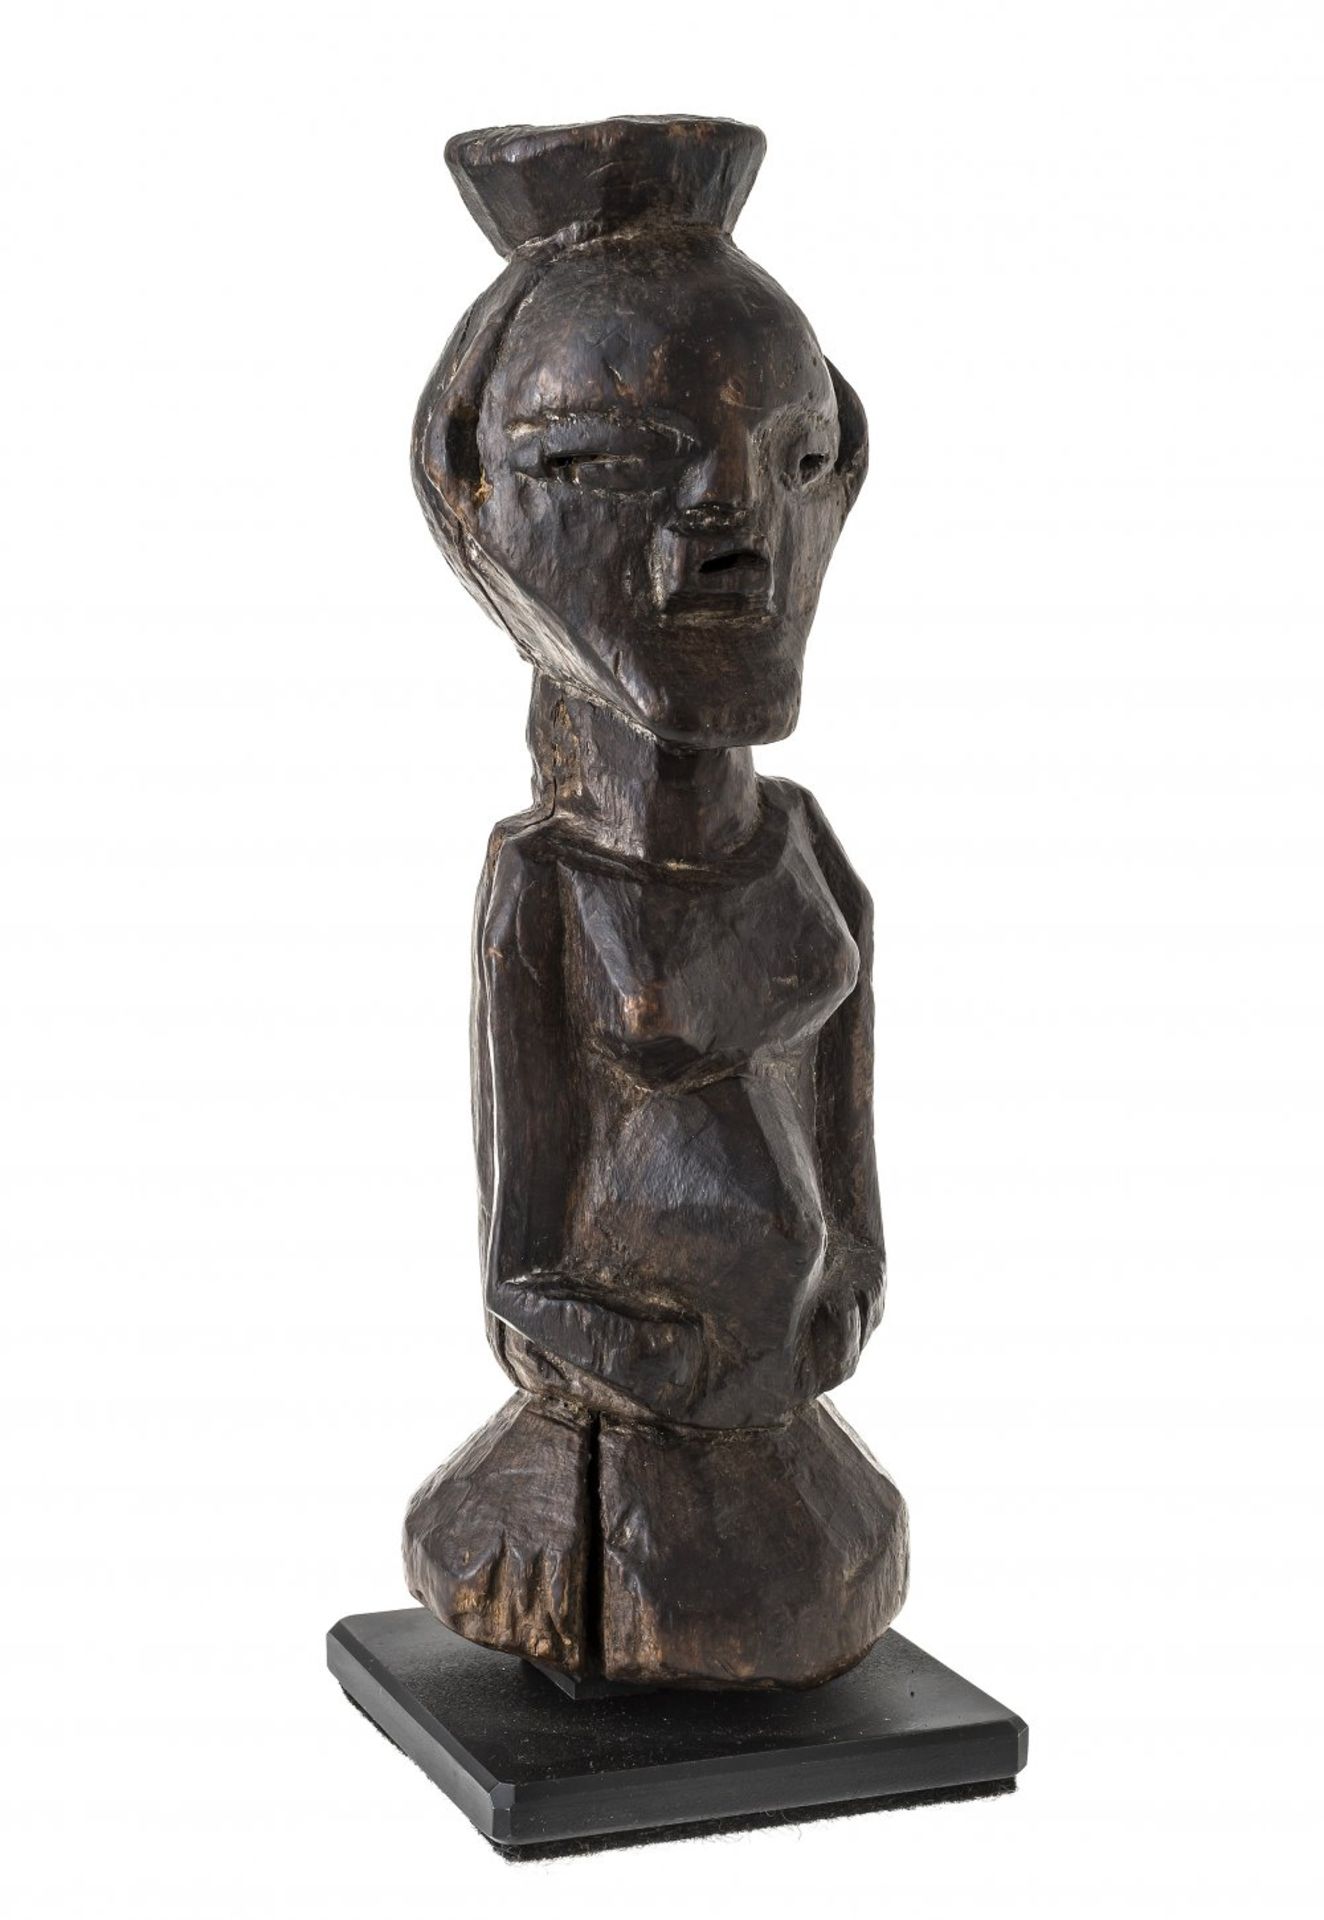 Magische Figur "kabeja"Songe, D.R.Kongo. H. 22,2 cm. Eintiefung im Kopf zum Befüllen mit magischen